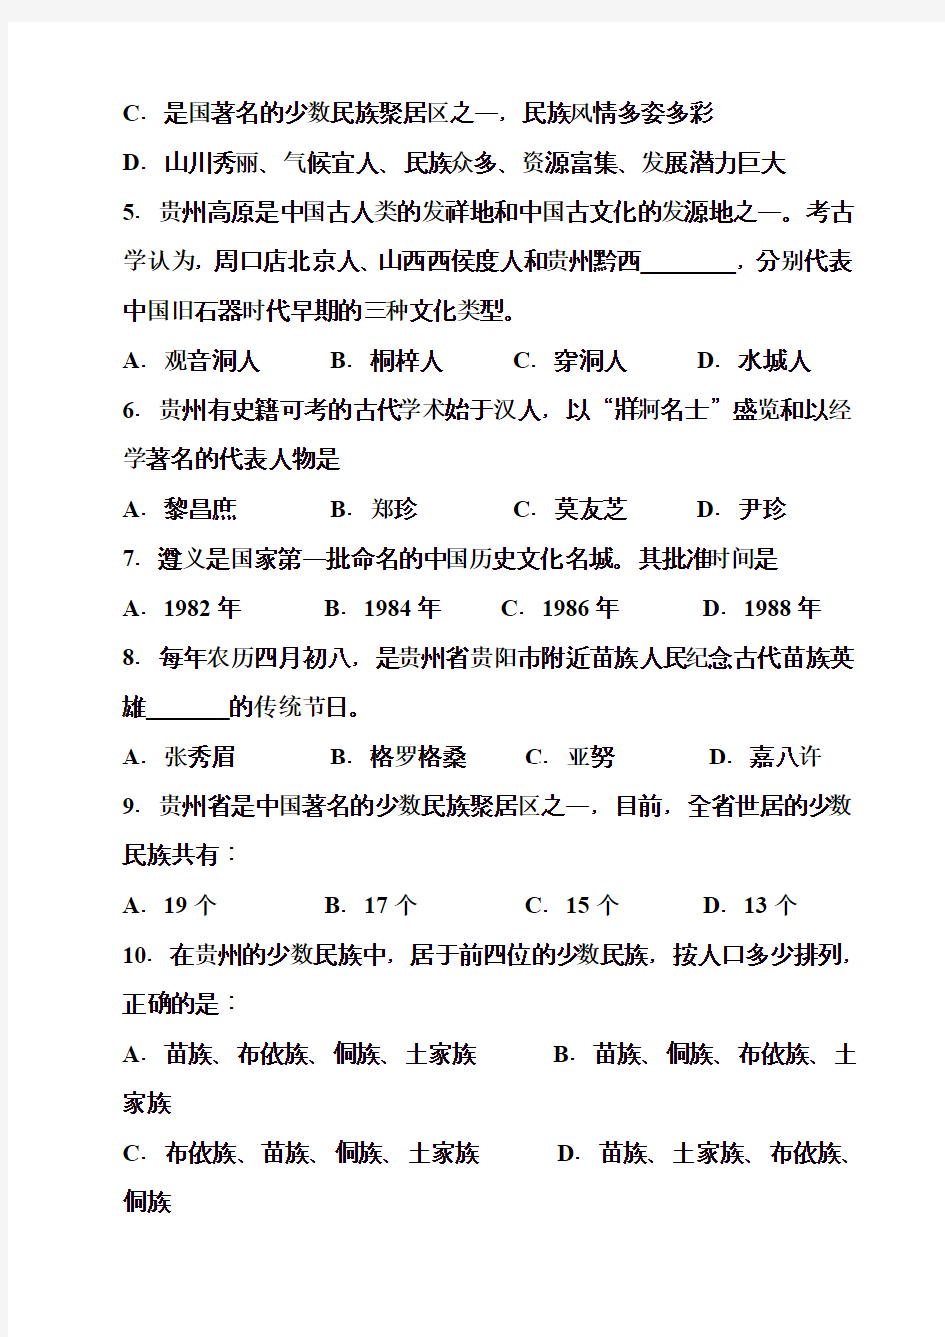 2015—1016年贵州省事业单位考试公共基础知识真题及答案解析